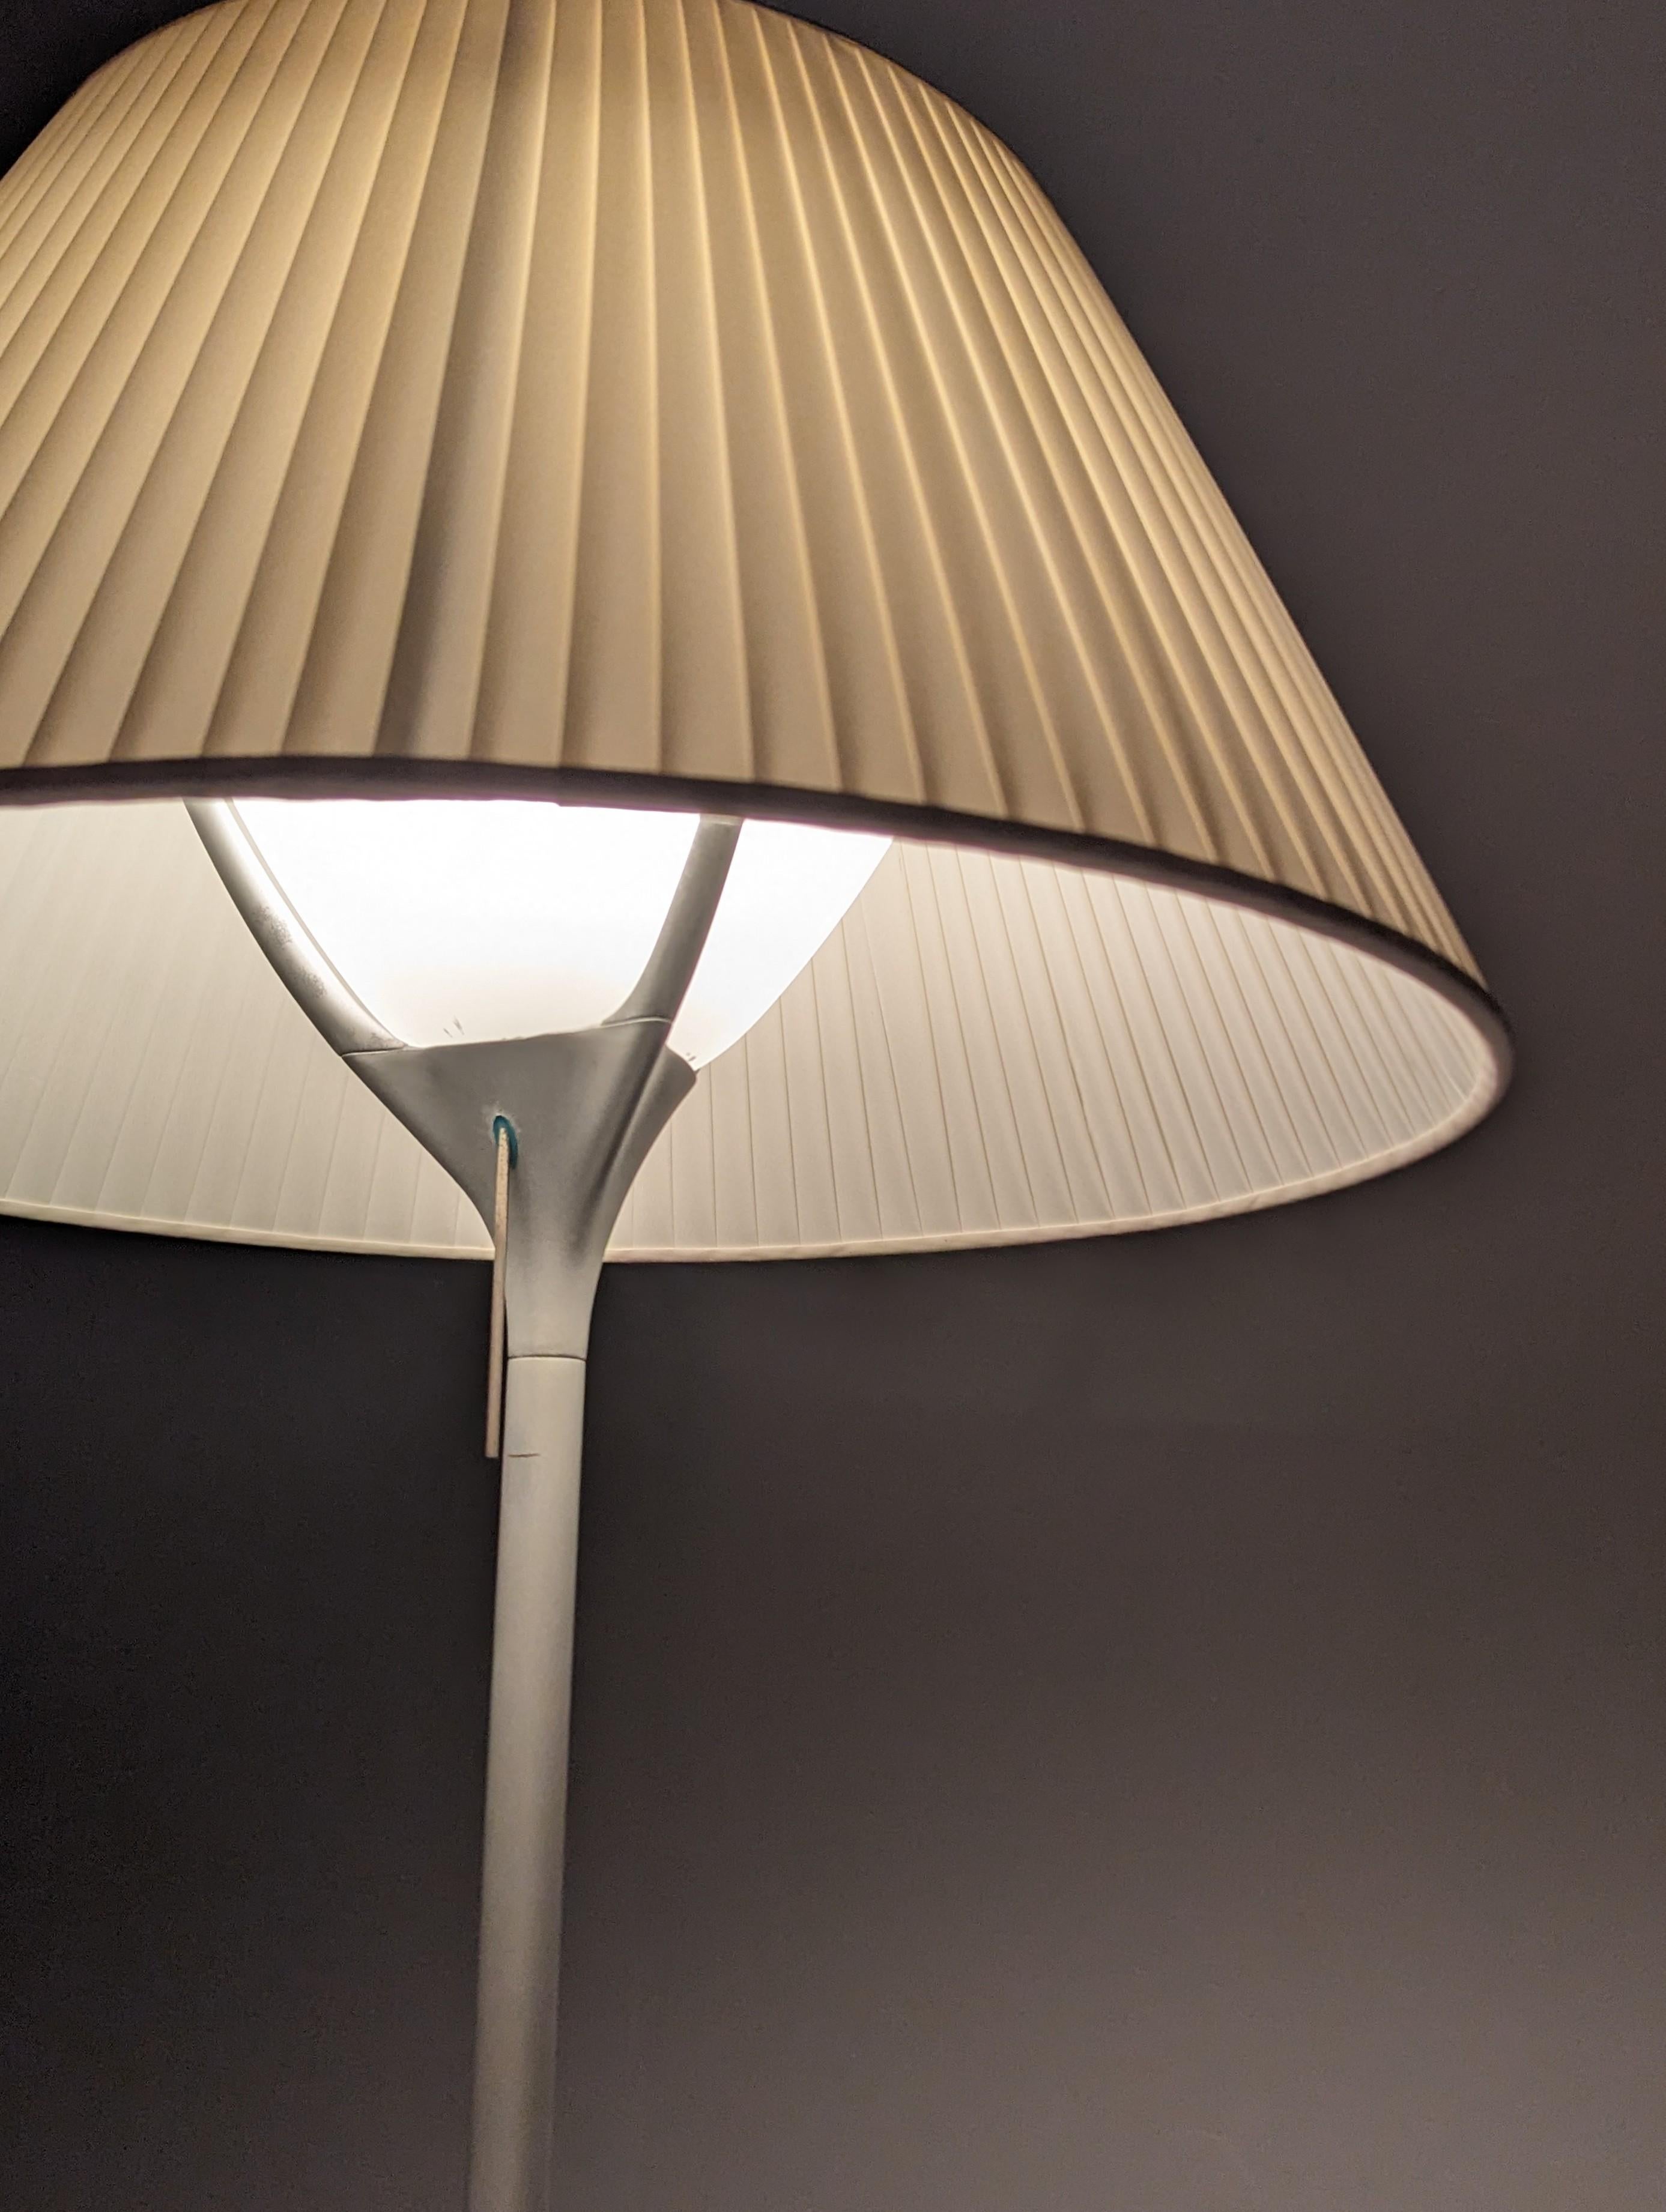 Elegante grande lampe conçue par Philippe Starck pour Flos avec abat-jour plissé original.

